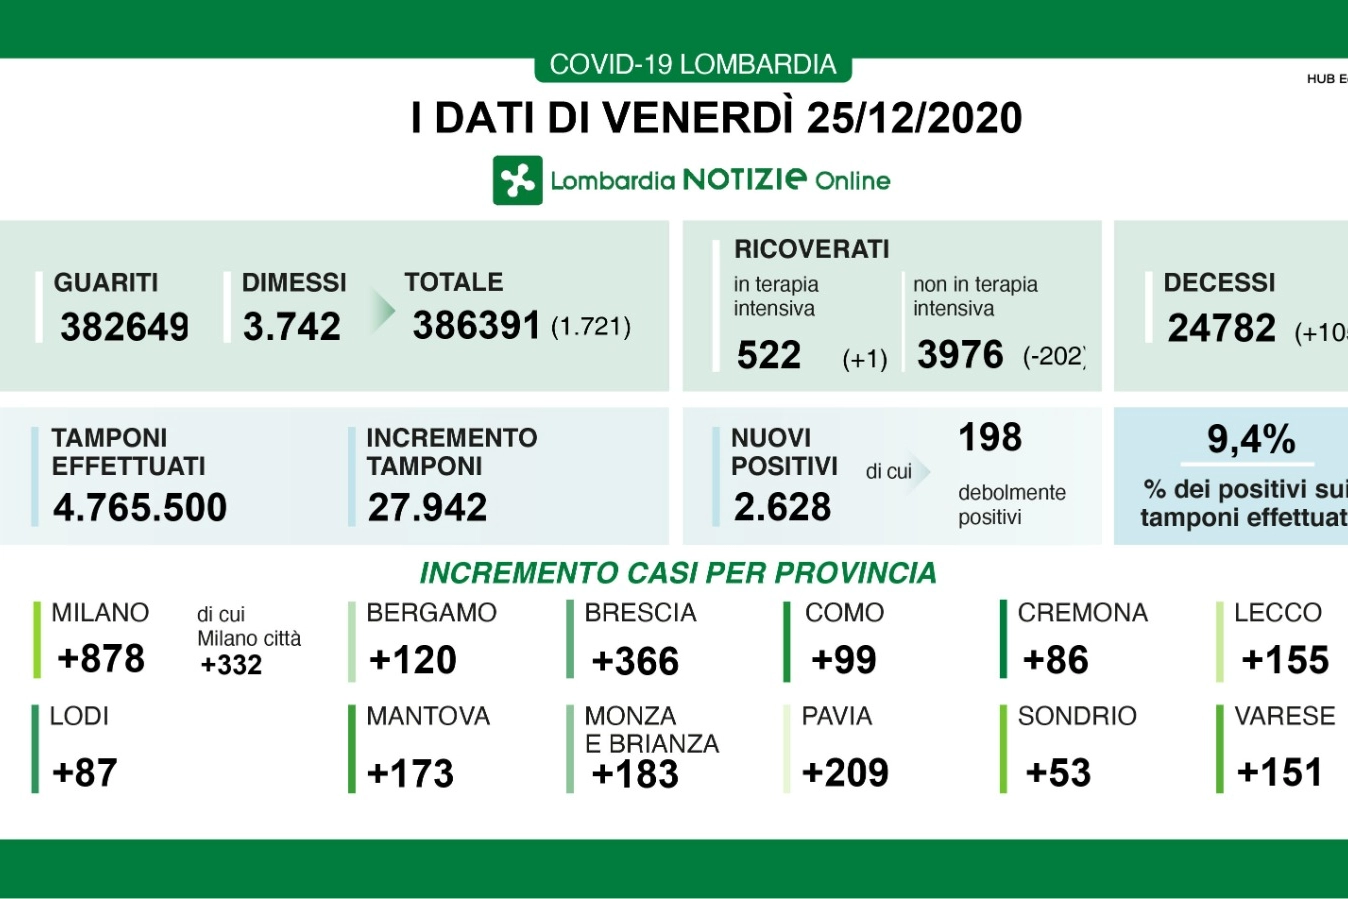 Emergenza Covid-19 in Lombardia: i dati del 25 dicembre